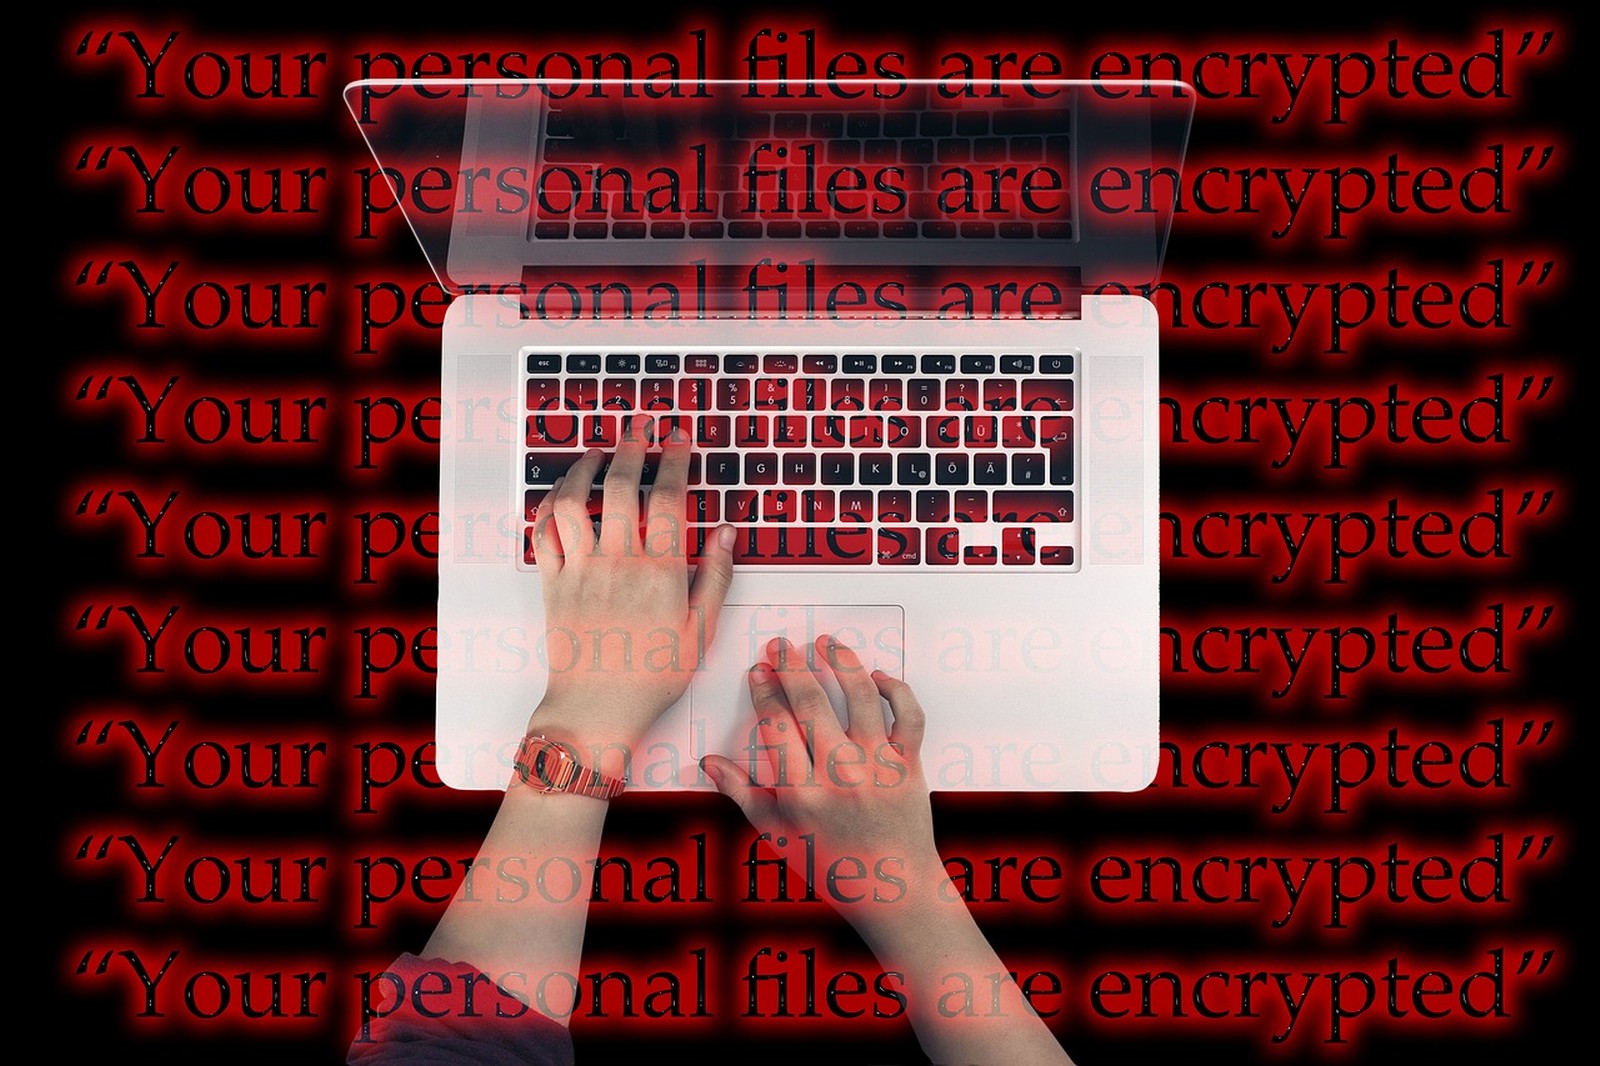 Die Analyse von Akamai ergab, dass Microsoft, PayPal, DHL und Dropbox die am häufigsten attackierten Marken von Cyberkriminellen im Bereich Phishing waren.